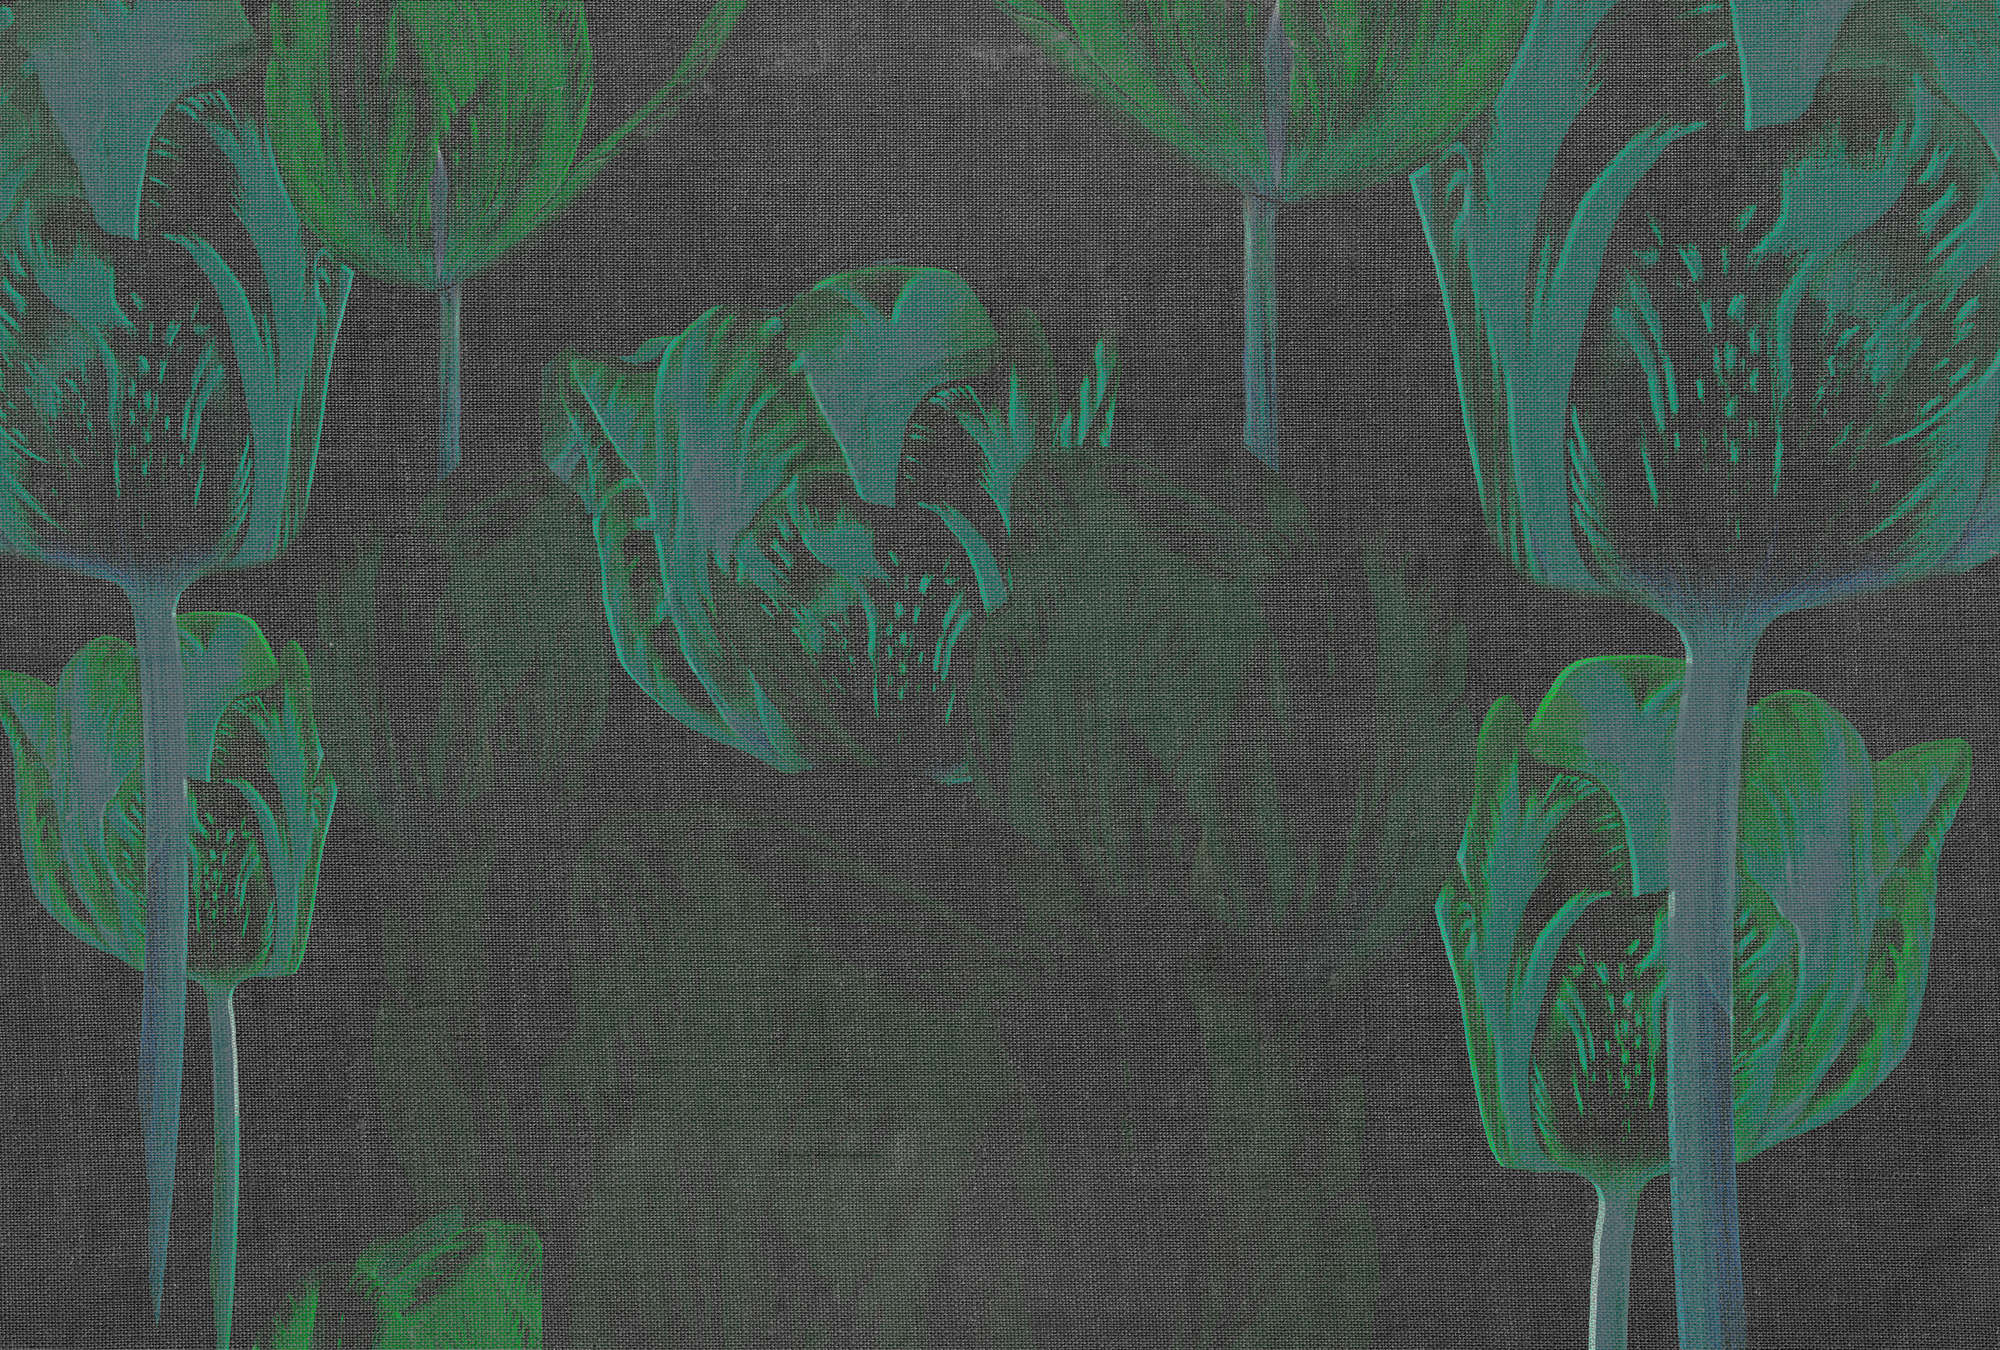             Dunkle Fototapete Tulpen, Blüten in auffälligen Farben – Grün, Schwarz, Grau
        